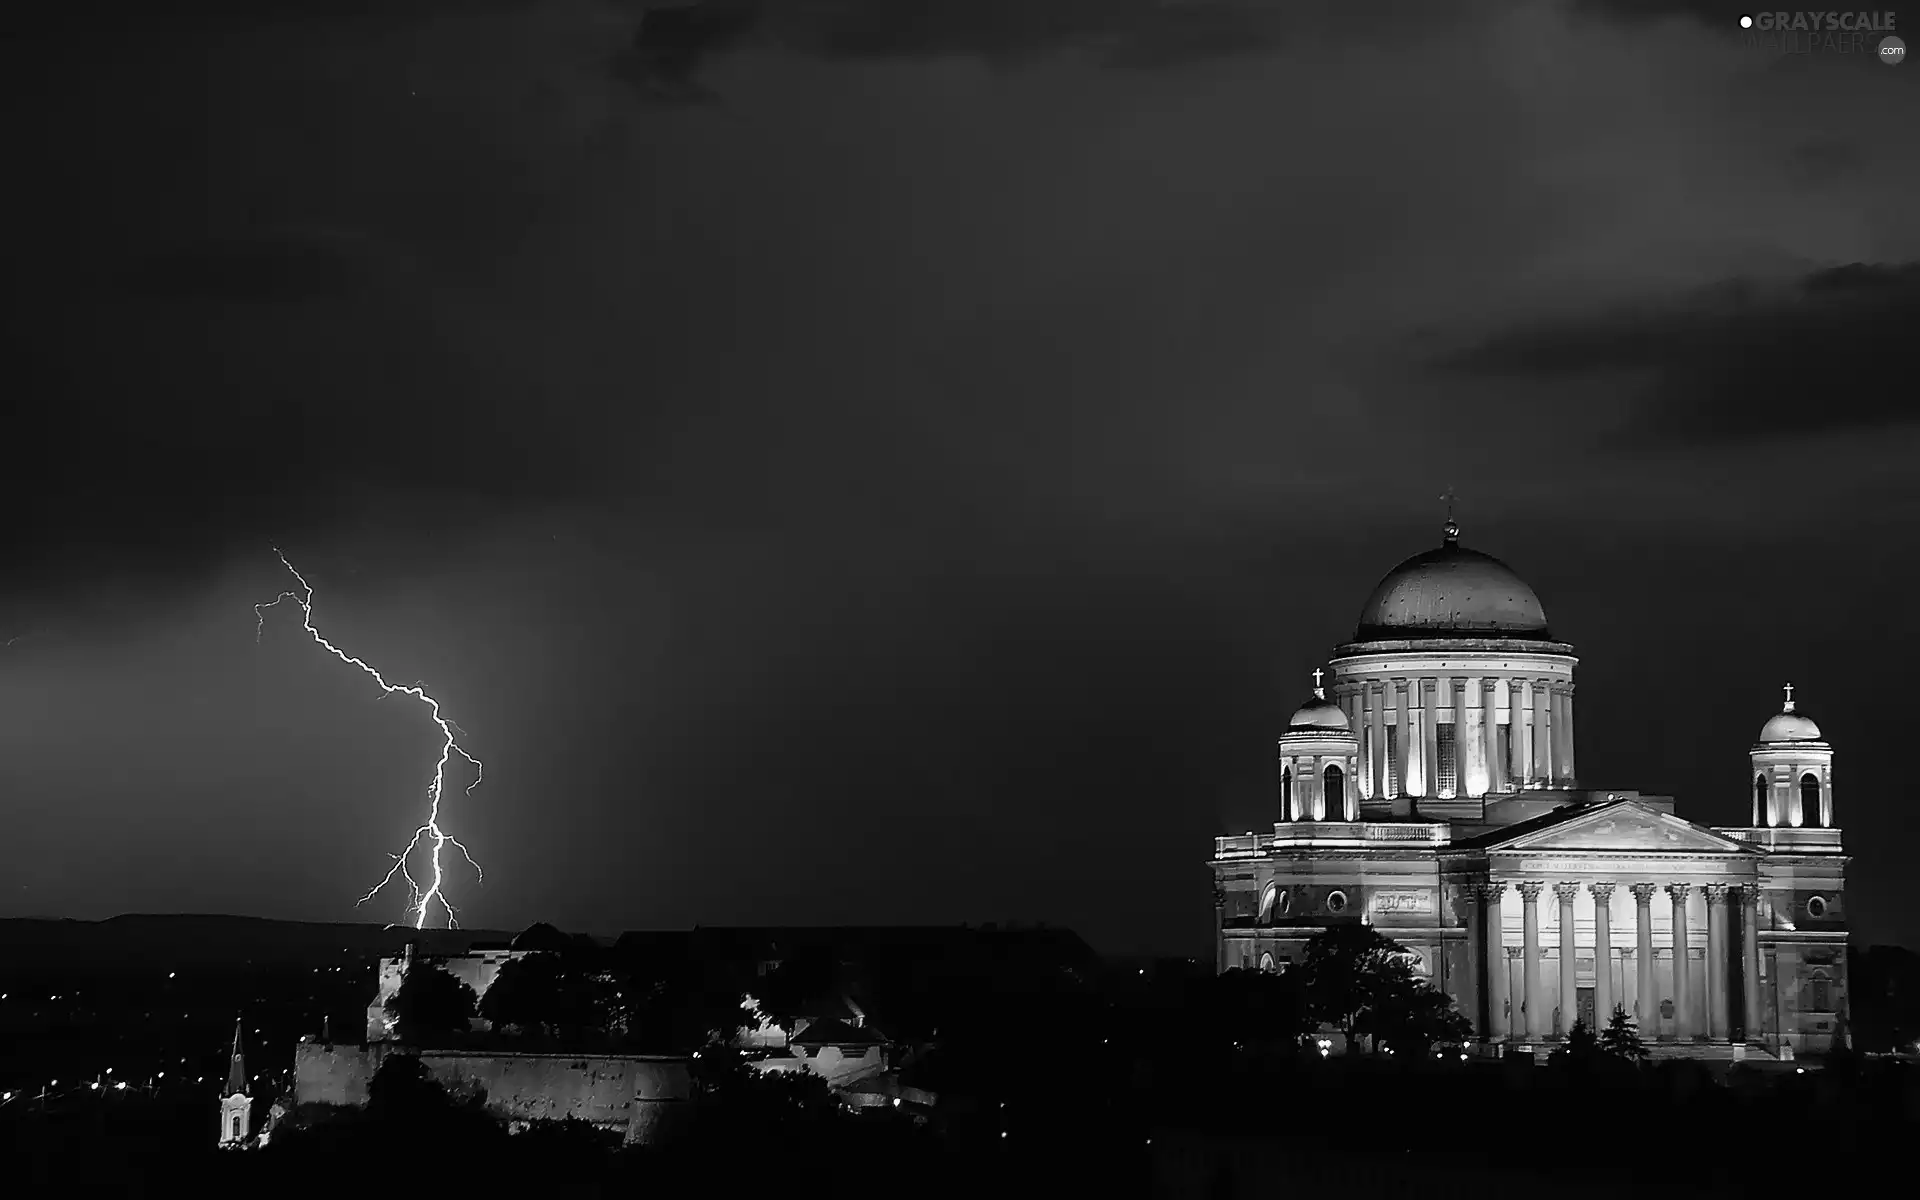 basilica, Hungary, lightning, Esztergom